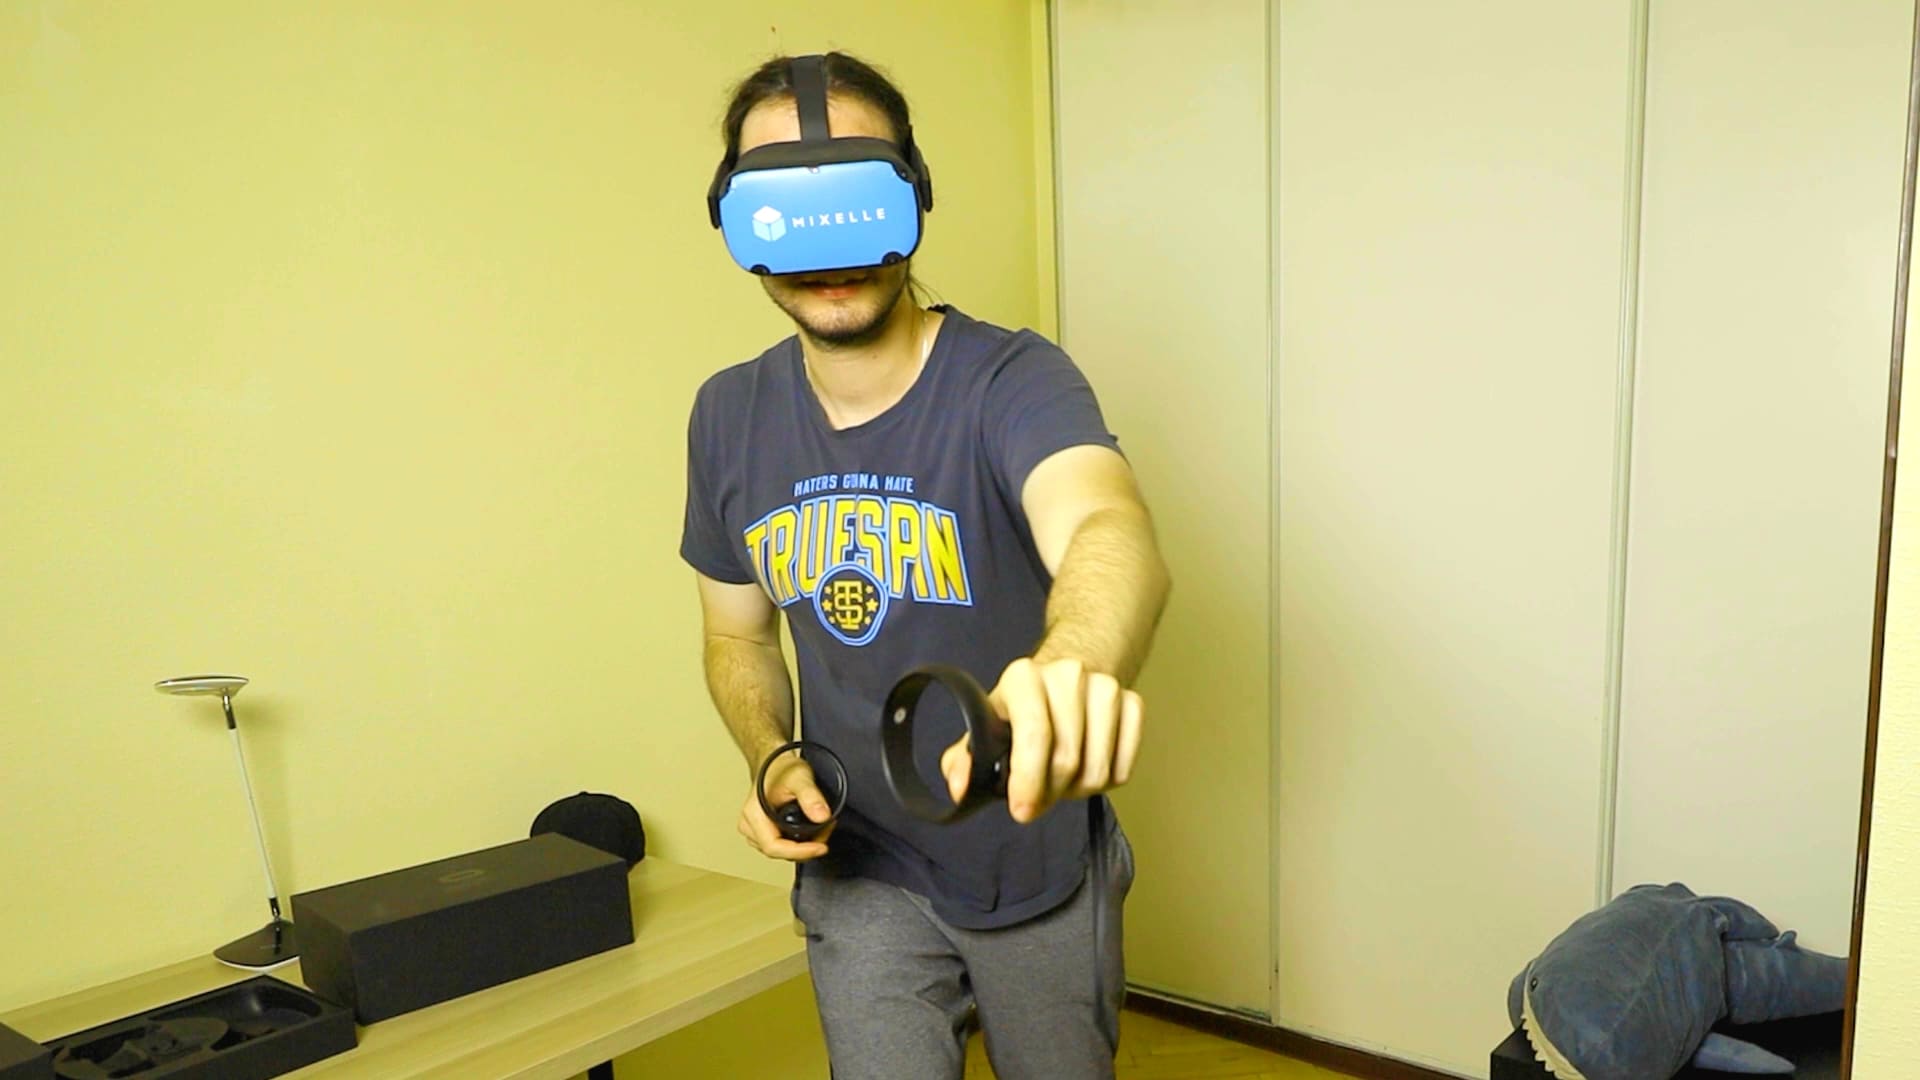 Аренда беспроводного автономного VR аттракциона Oculus Quest 2